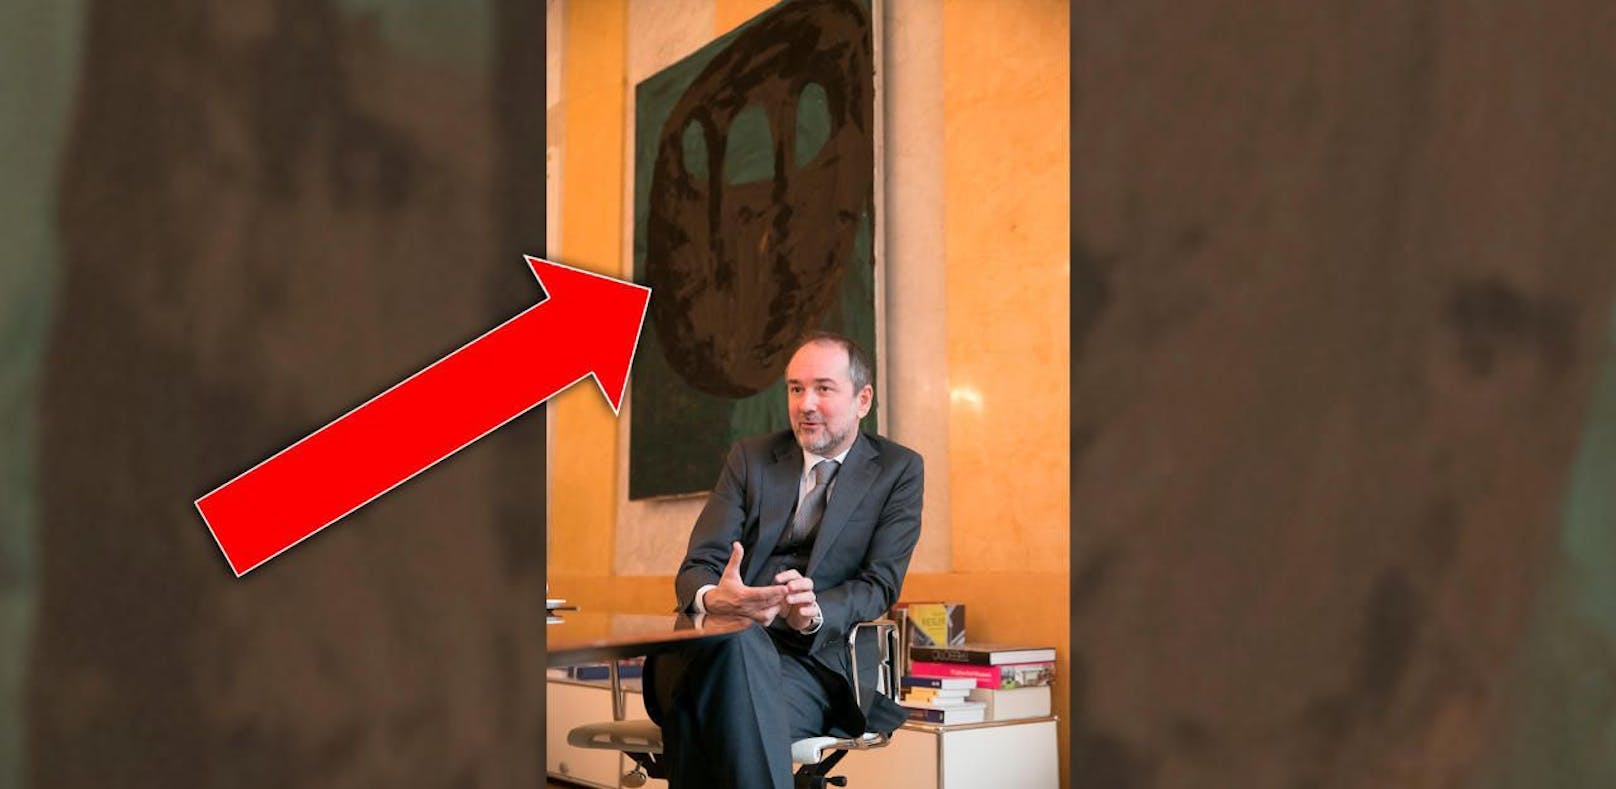 Drozda nahm geborgtes Gemälde mit in SPÖ-Büro